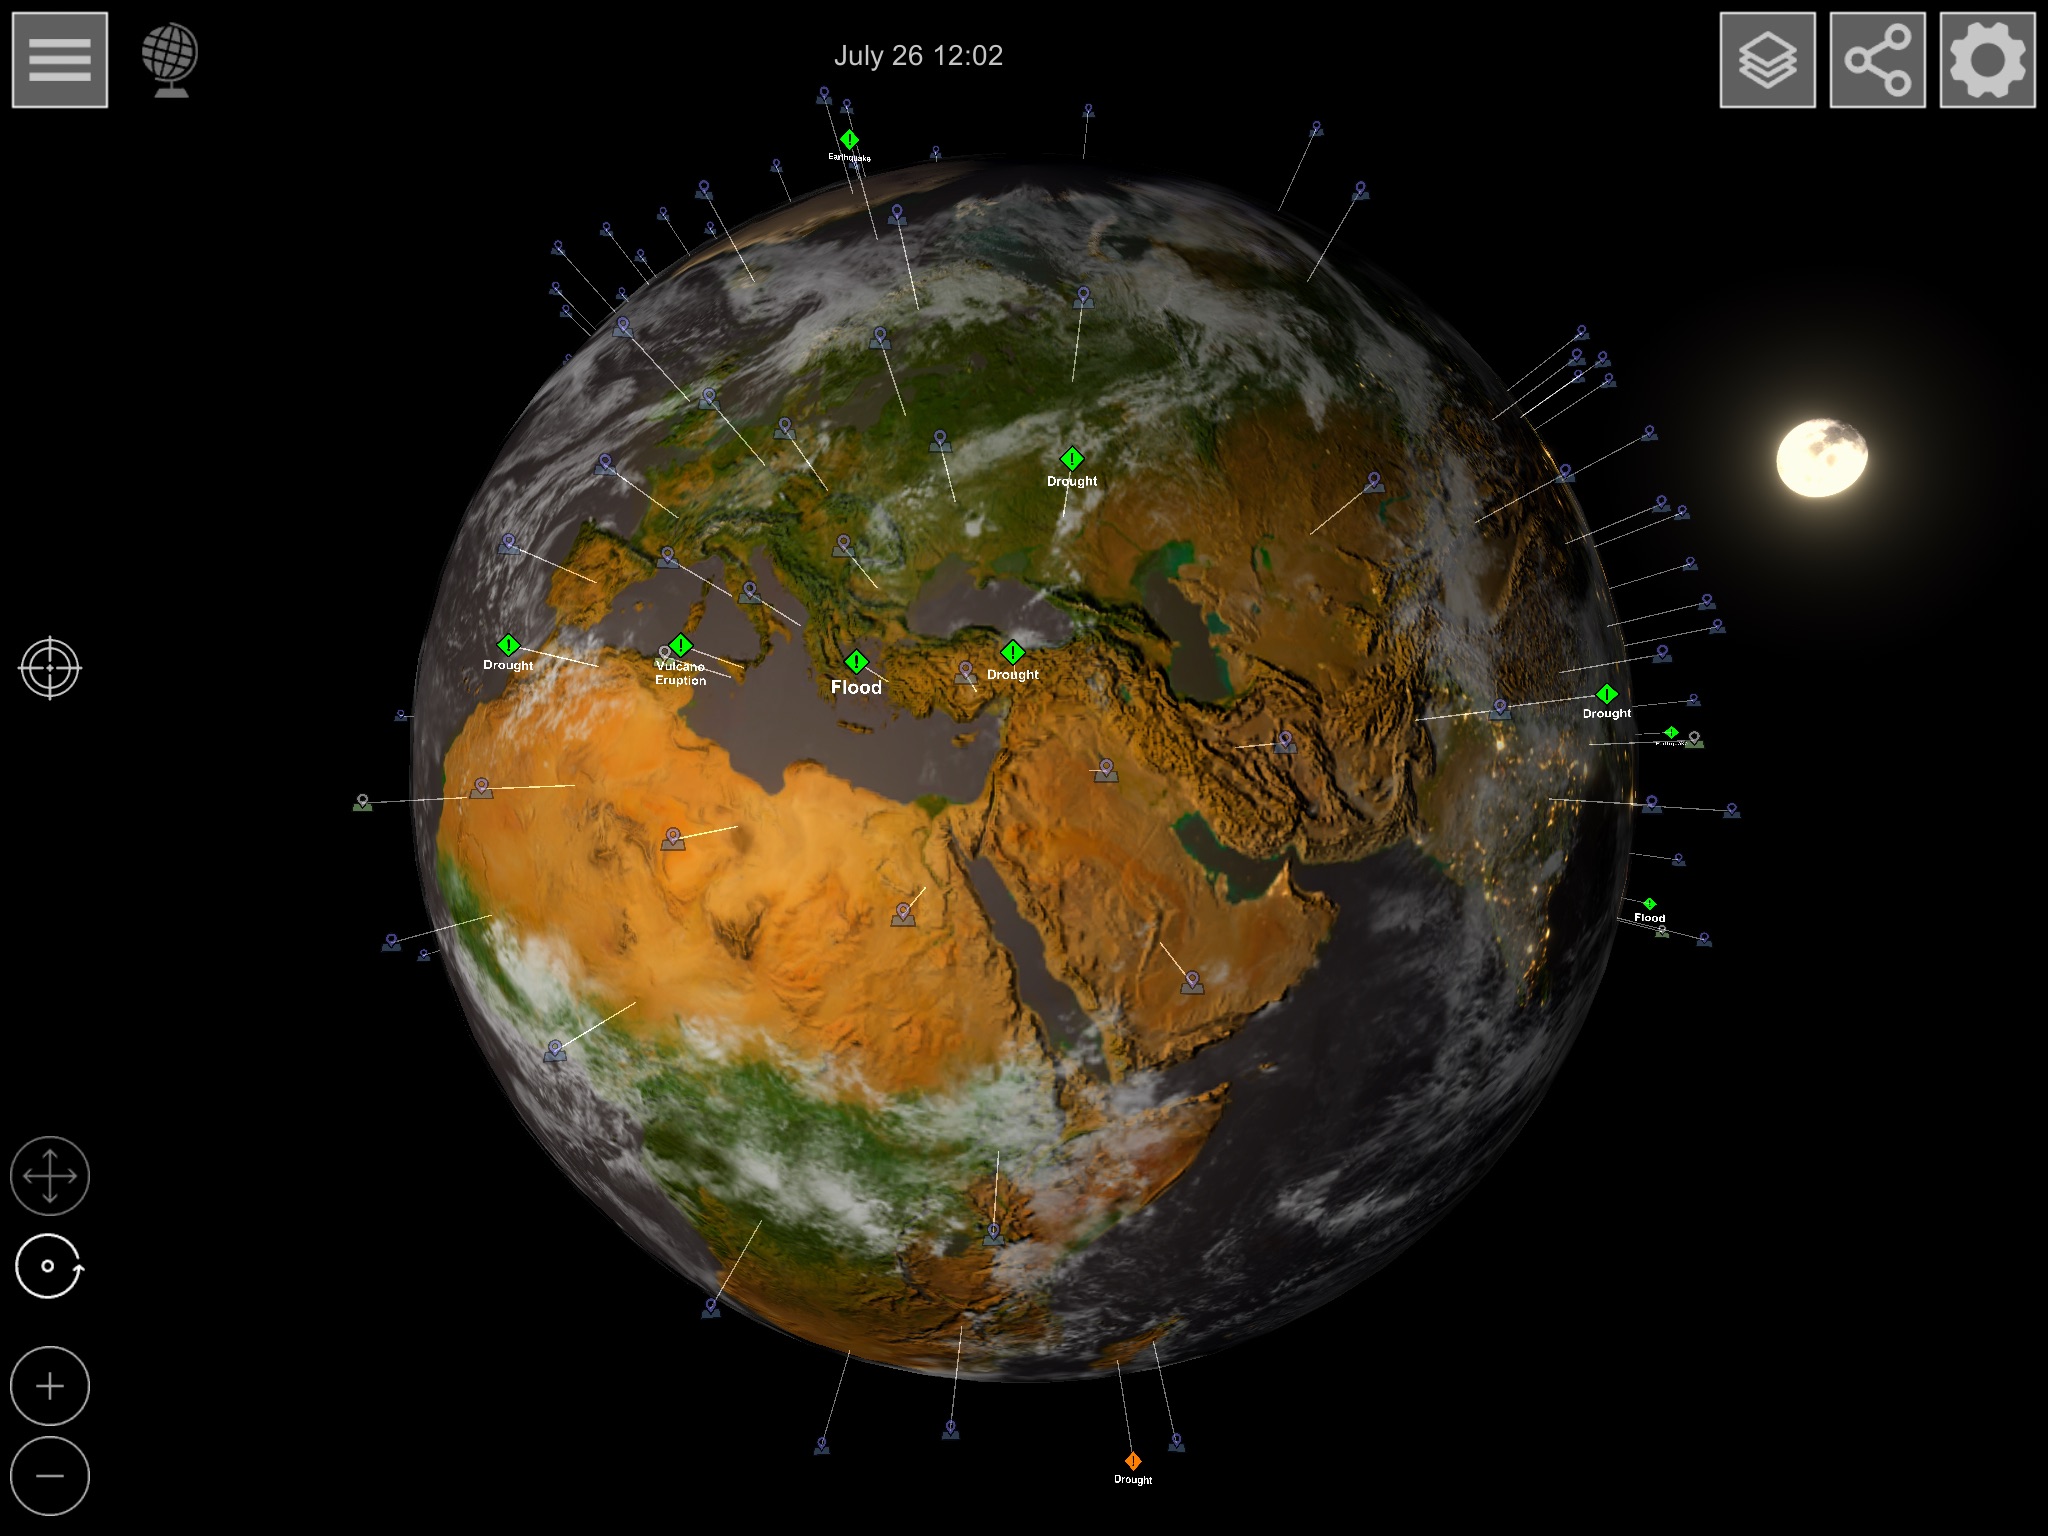 GlobeViewer [iOS/Android/Mac/Win]: Globale Rotationsansicht mit Markern für Detailkarten und aktuellen Ereignissen